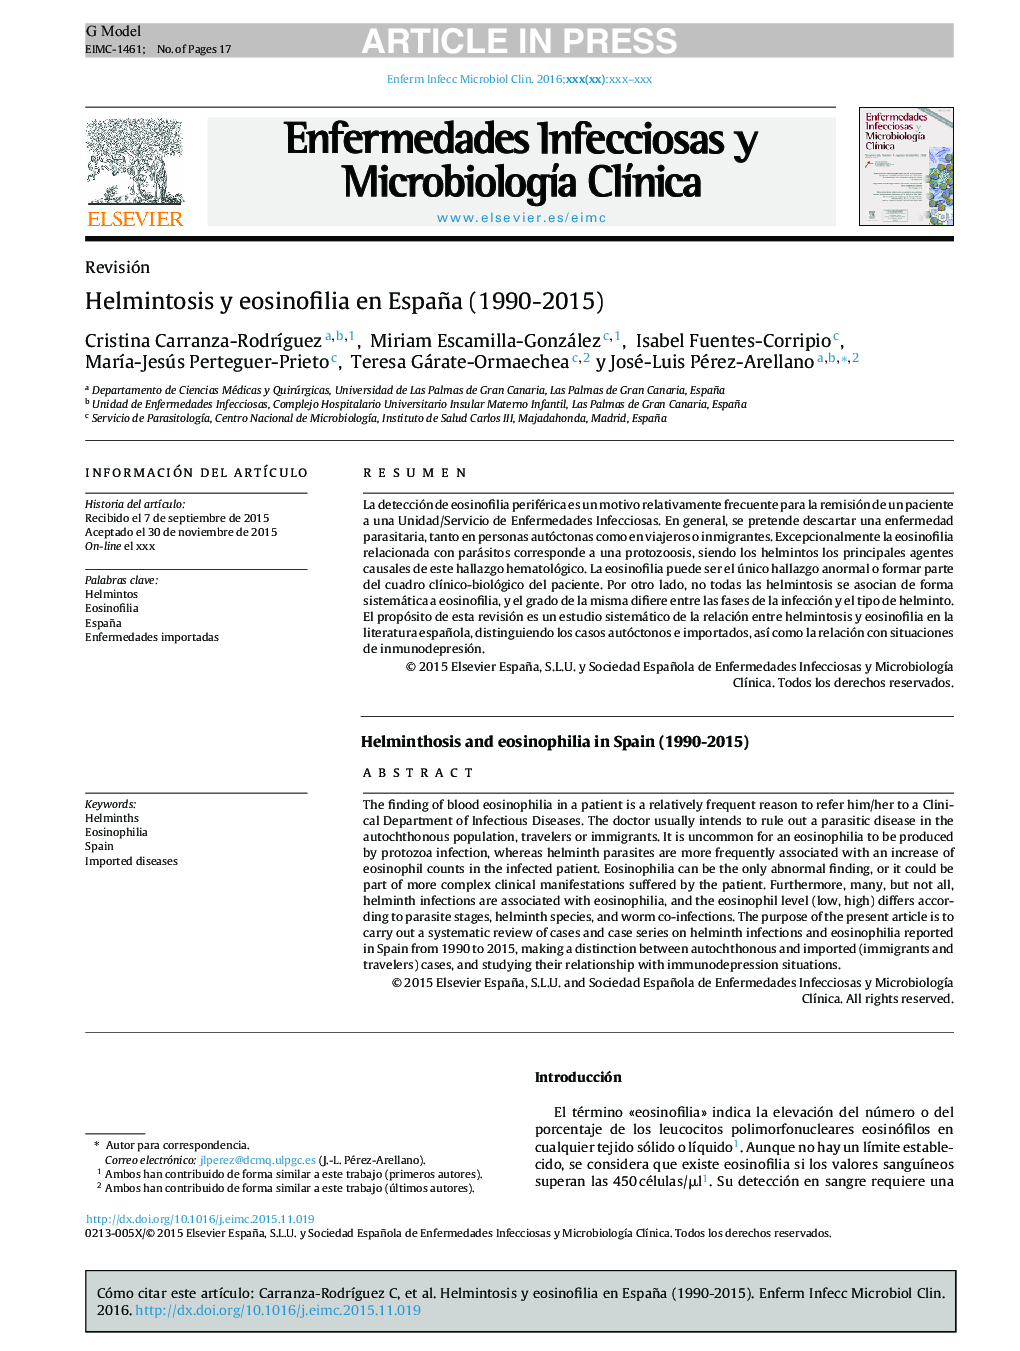 Helmintosis y eosinofilia en España (1990-2015)